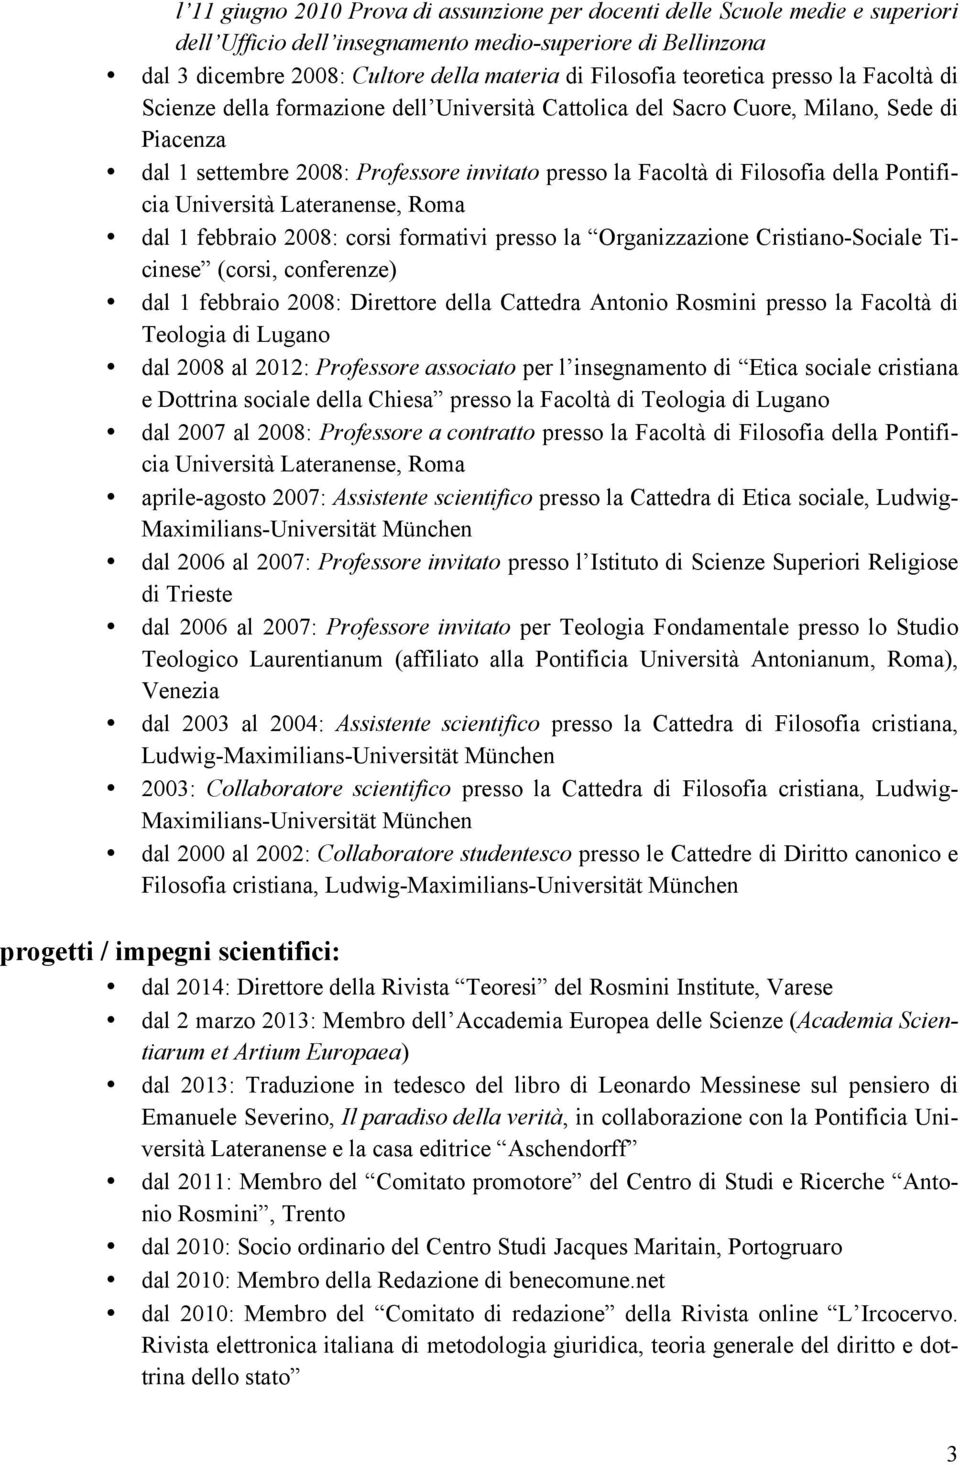 della Pontificia Università Lateranense, Roma dal 1 febbraio 2008: corsi formativi presso la Organizzazione Cristiano-Sociale Ticinese (corsi, conferenze) dal 1 febbraio 2008: Direttore della